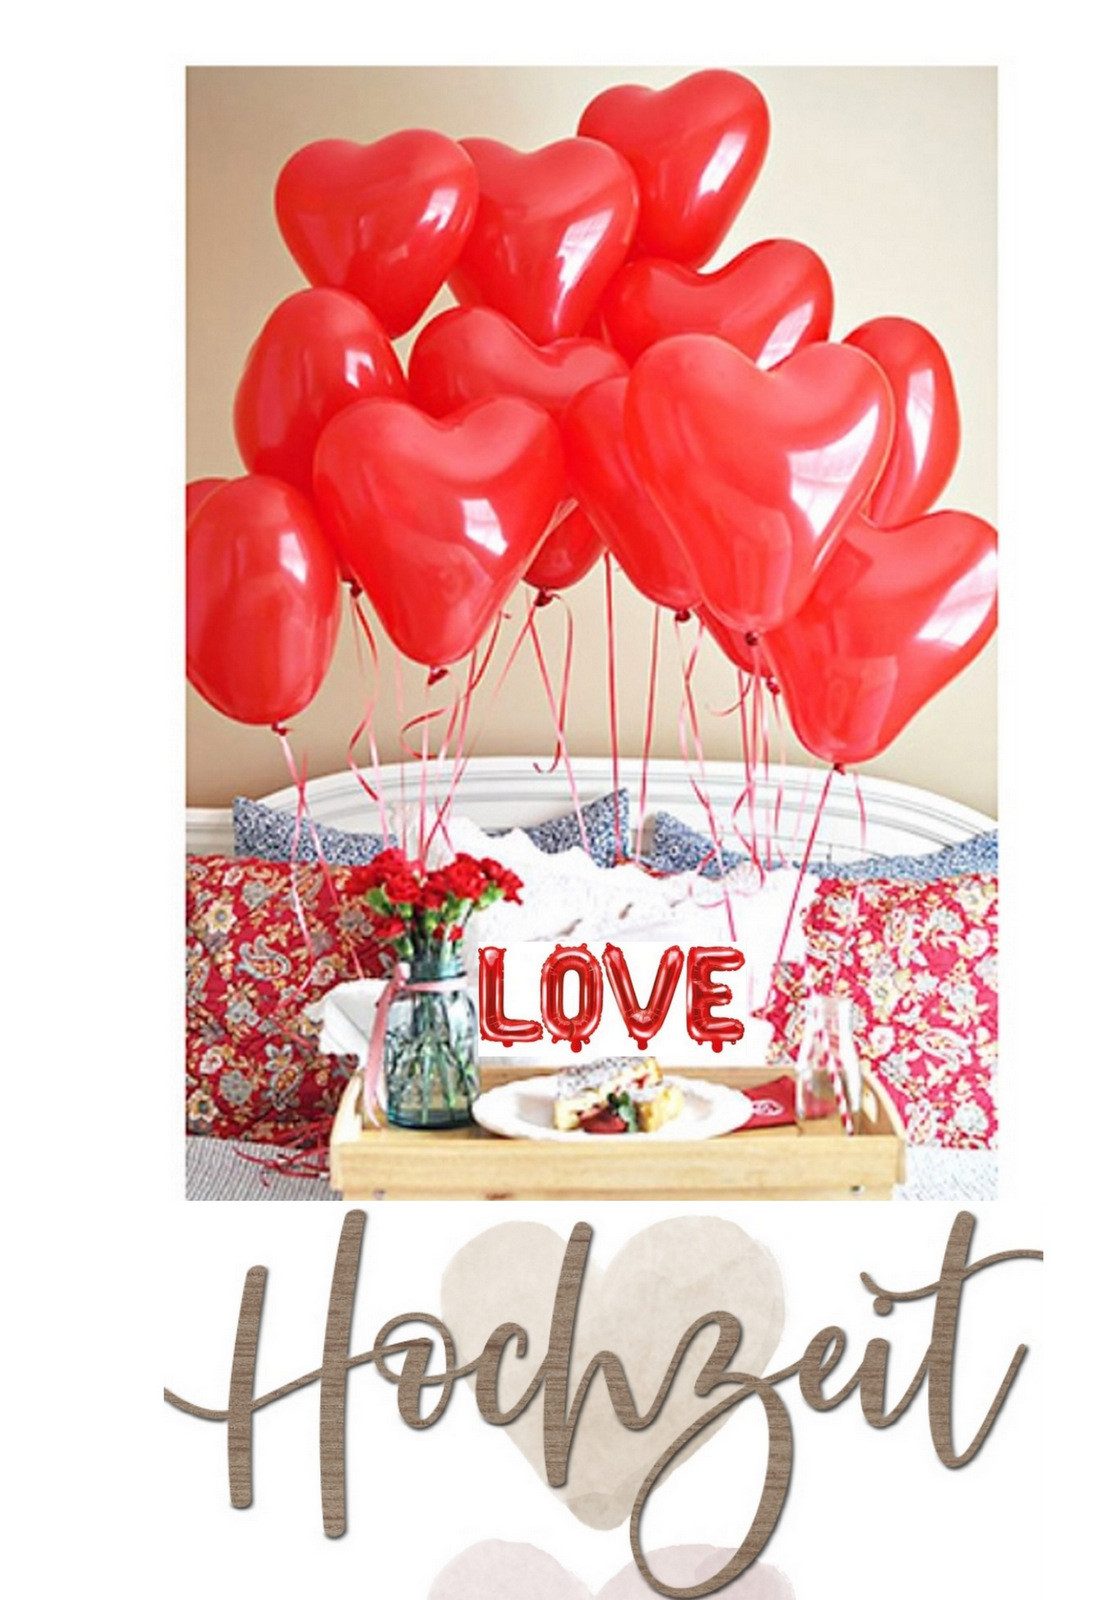 PaulZdrada Luftballon Luftballons 55 Stück Herzform Hochzeiten, Valentinstag, Jahrestage, Sehr schöne Ballonreflexion (kein matt) Karmesinrot